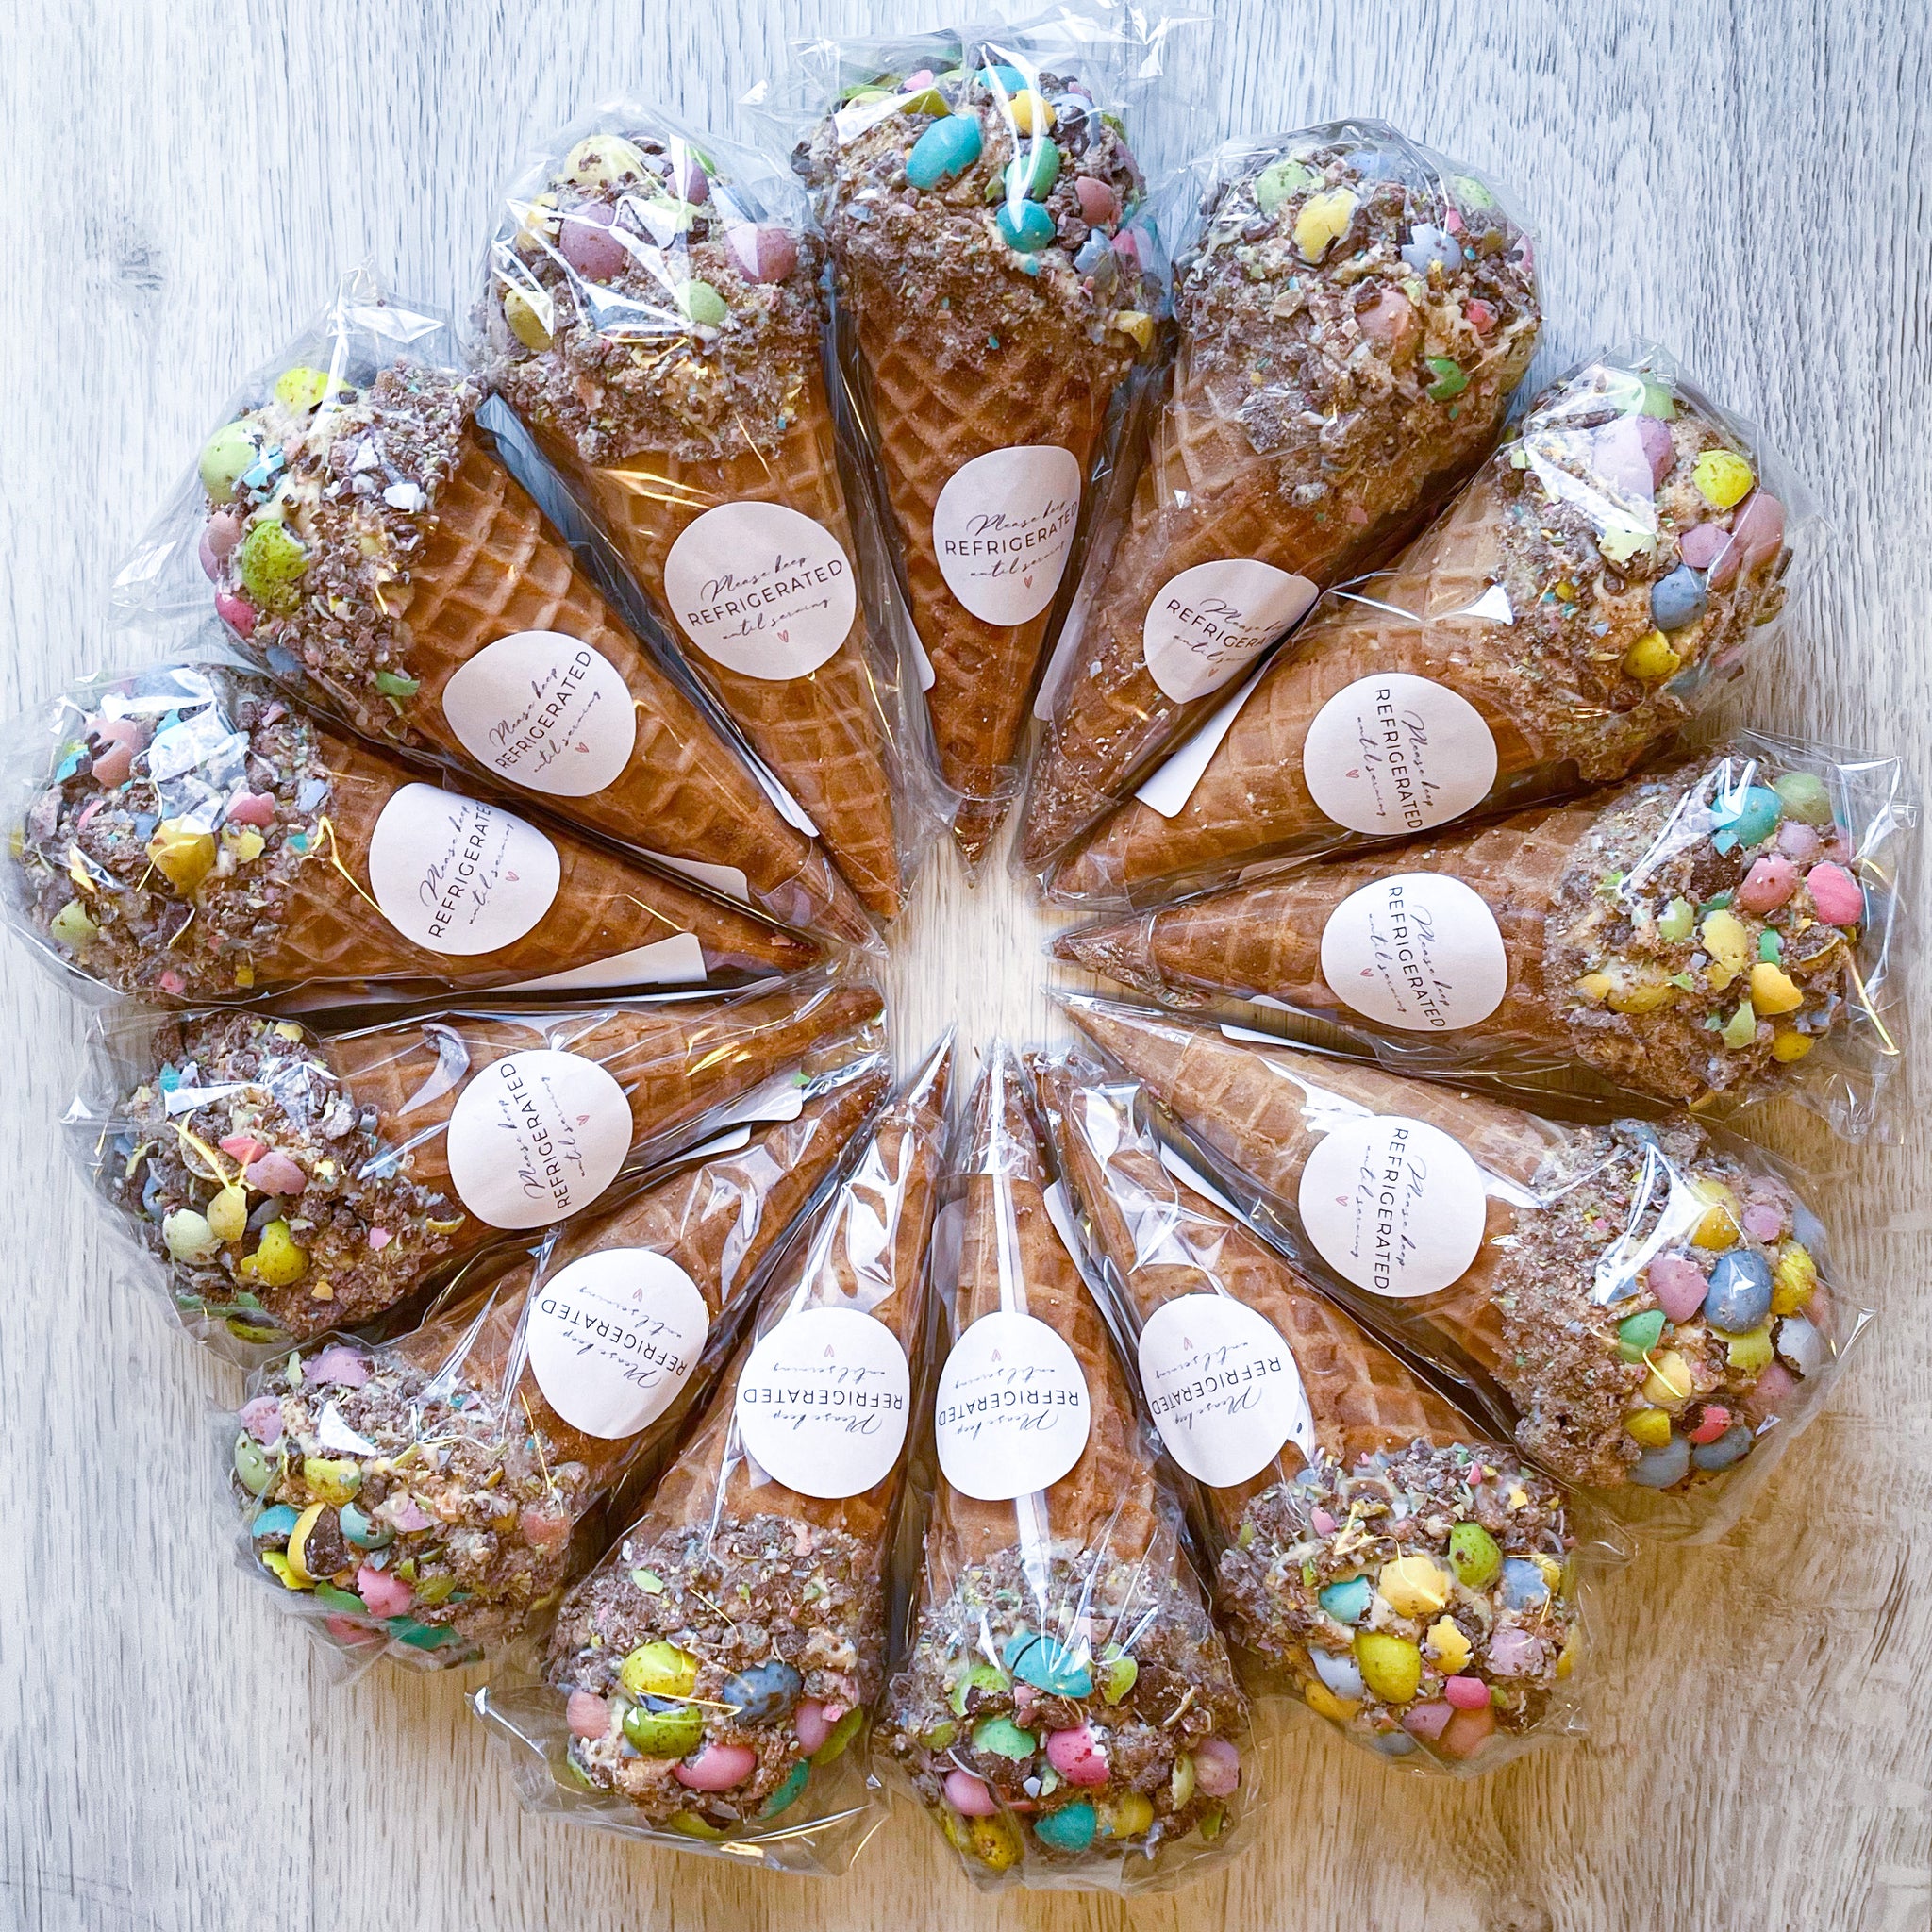 MACKAY'S BAKERY | The Mini Egg Cheesecake Cone